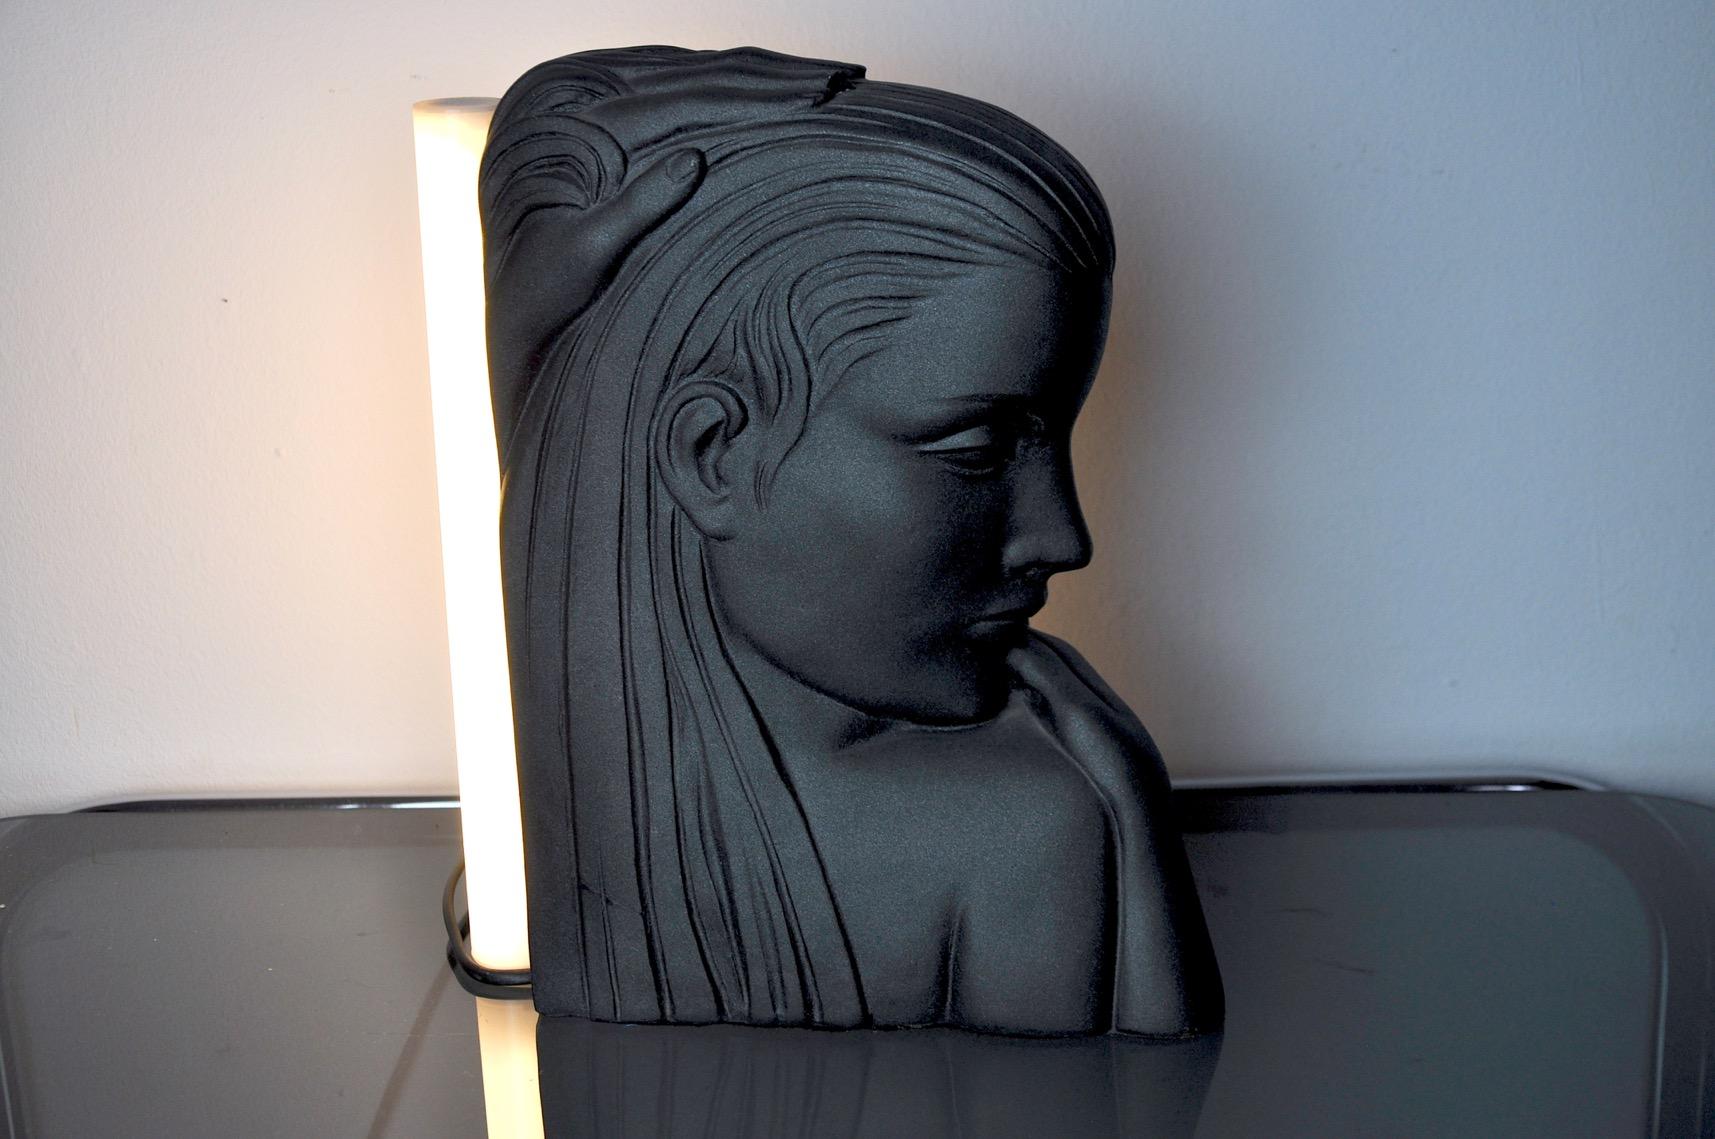 Très belle lampe de table représentant un buste de femme, conçue et produite en france dans les années 1970. Objet unique qui illuminera et apportera une véritable touche design à votre intérieur. Électricité vérifiée, quelques dommages peu